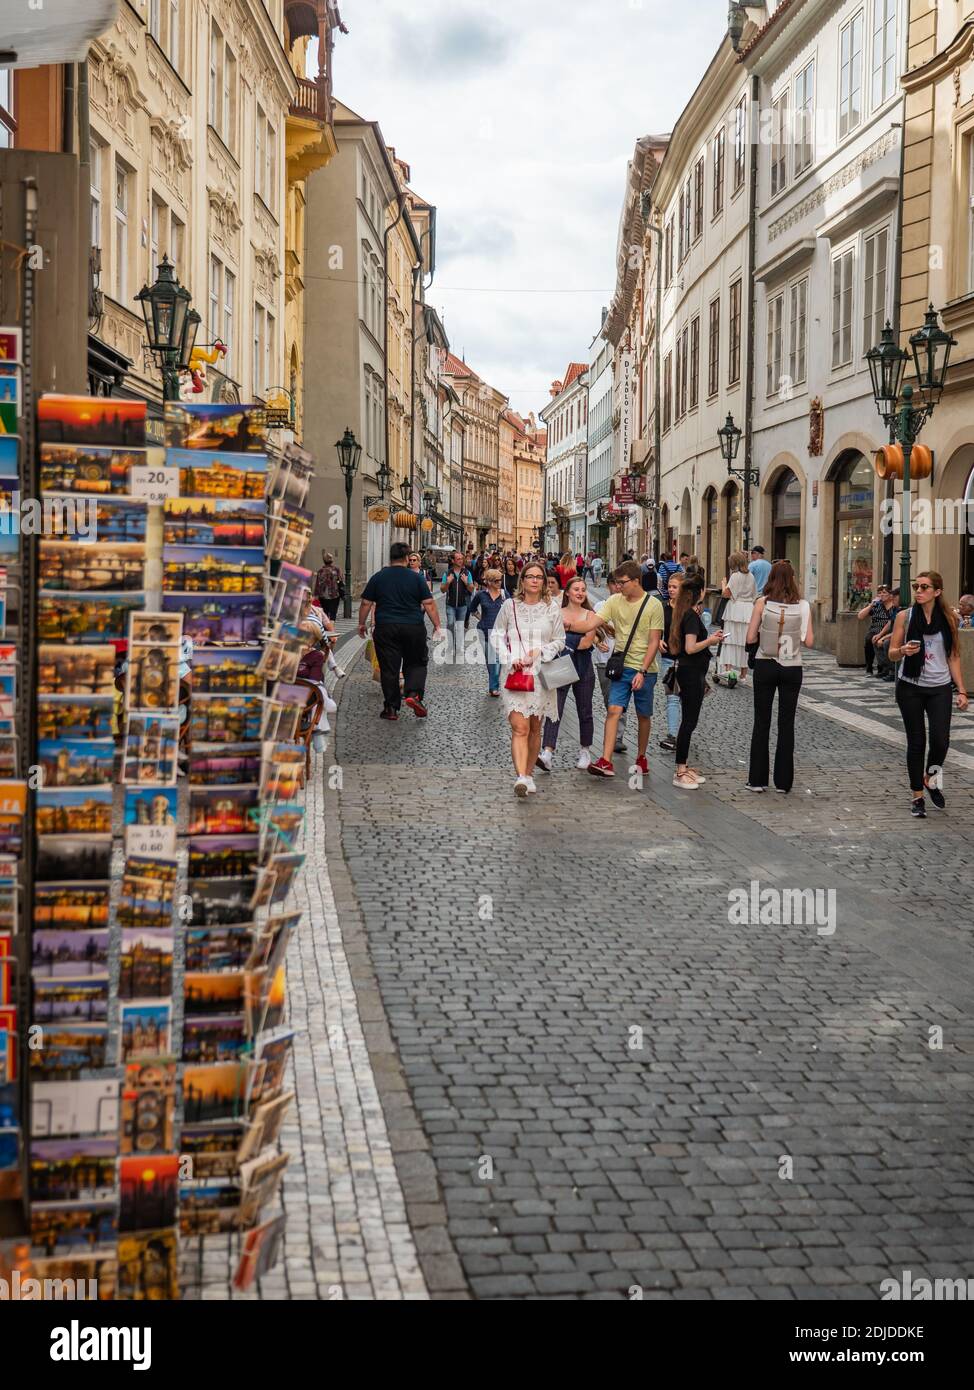 Turisti di Praga. Una trafficata strada acciottolata nel centro di Praga piena di turisti e negozi di souvenir. Foto Stock